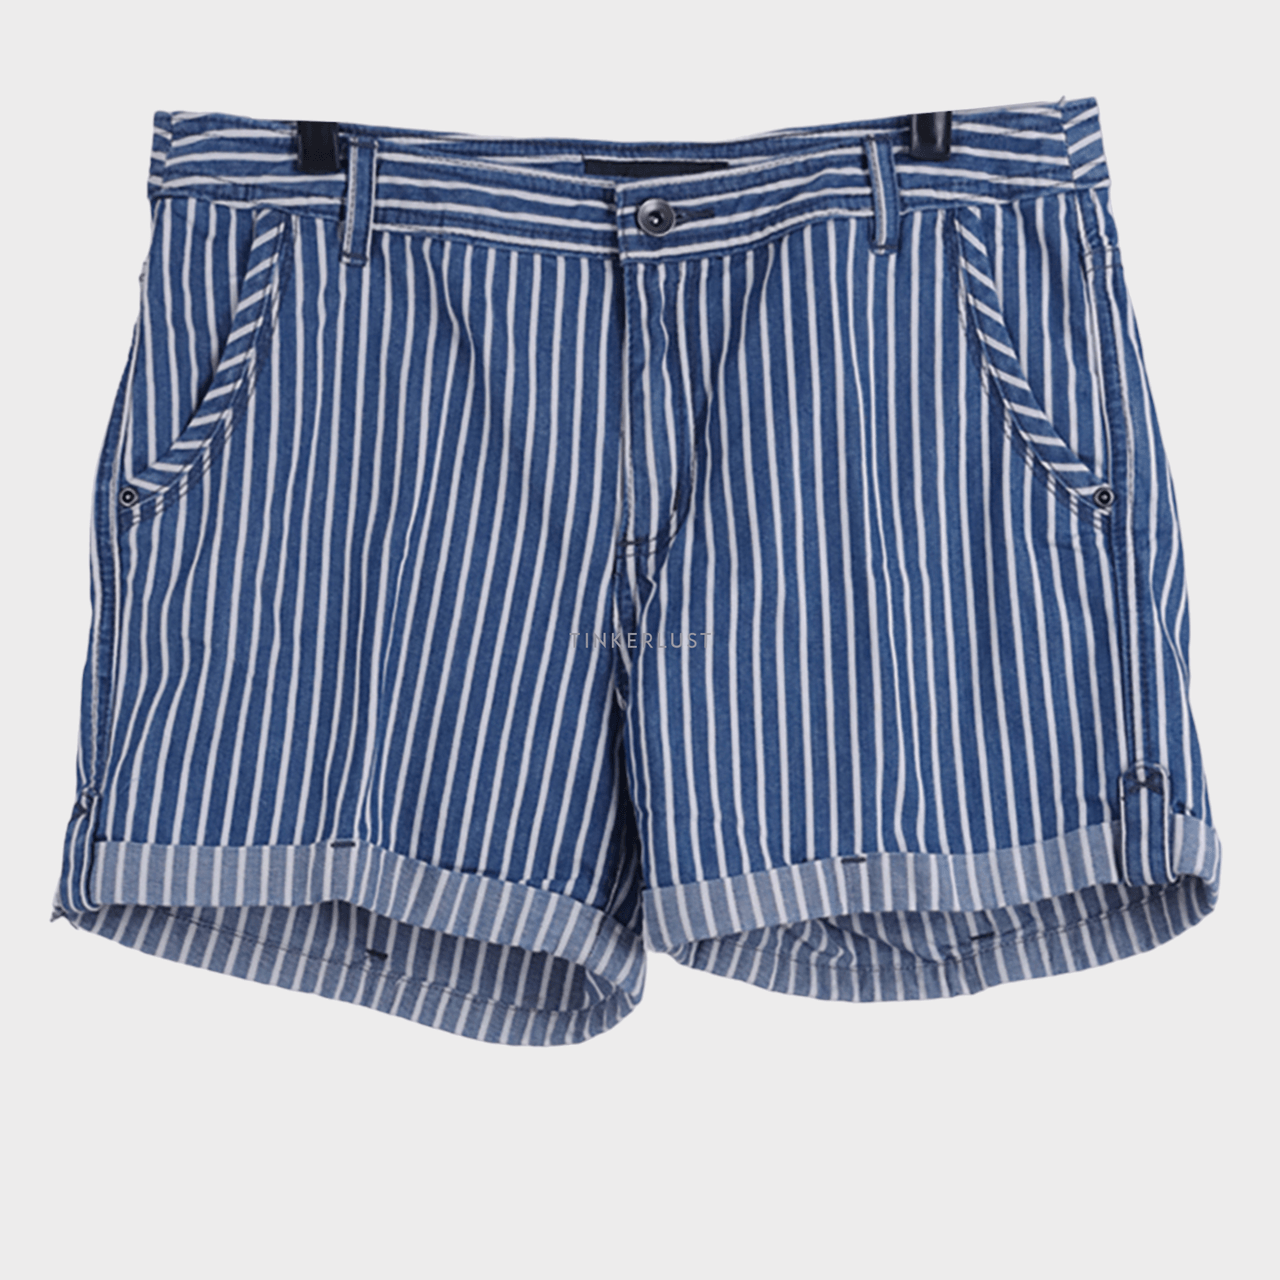 Bossini Blue & White Stripes Short Pants